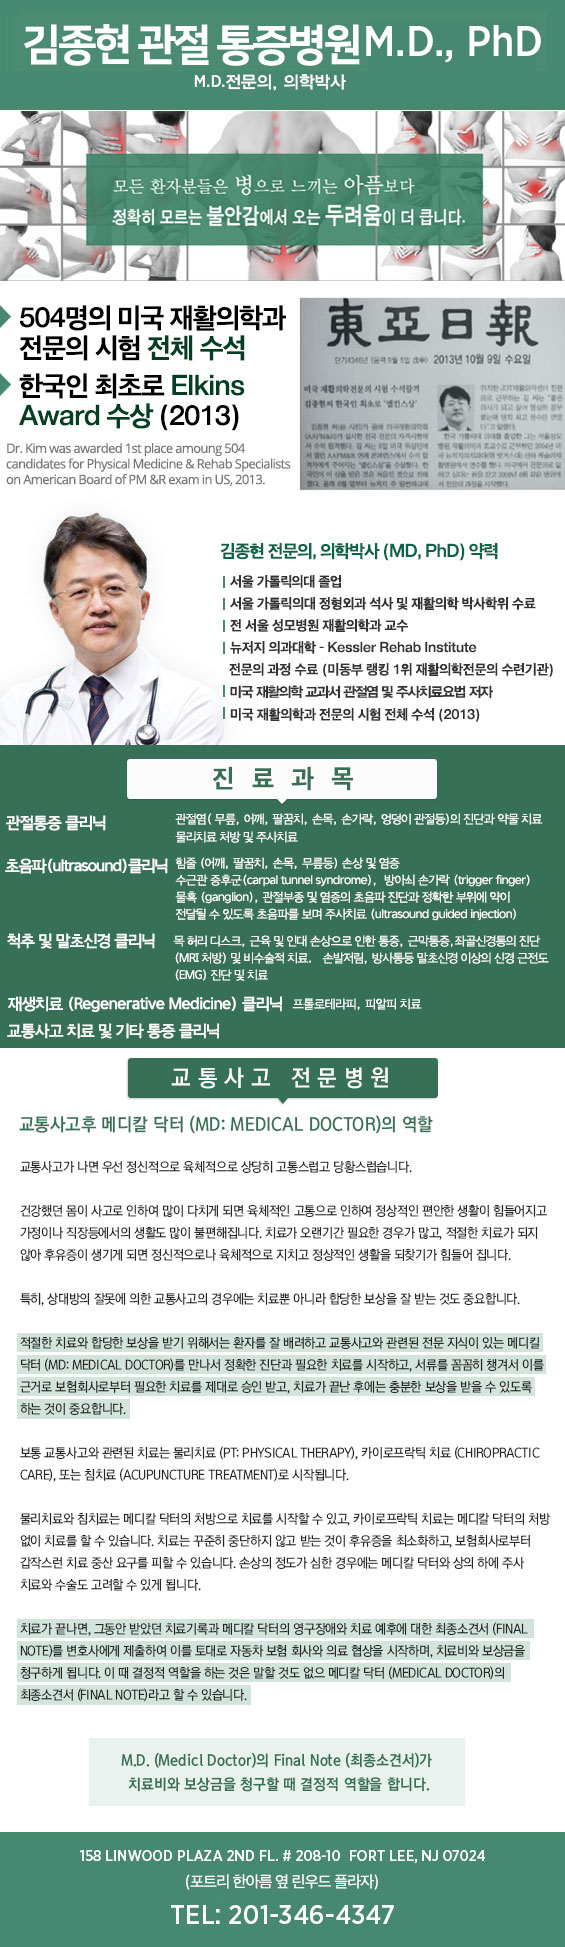 김종현 통증 재활의학 전문의 MD.PhD (뉴욕 정형외과,뉴저지 정형외과)